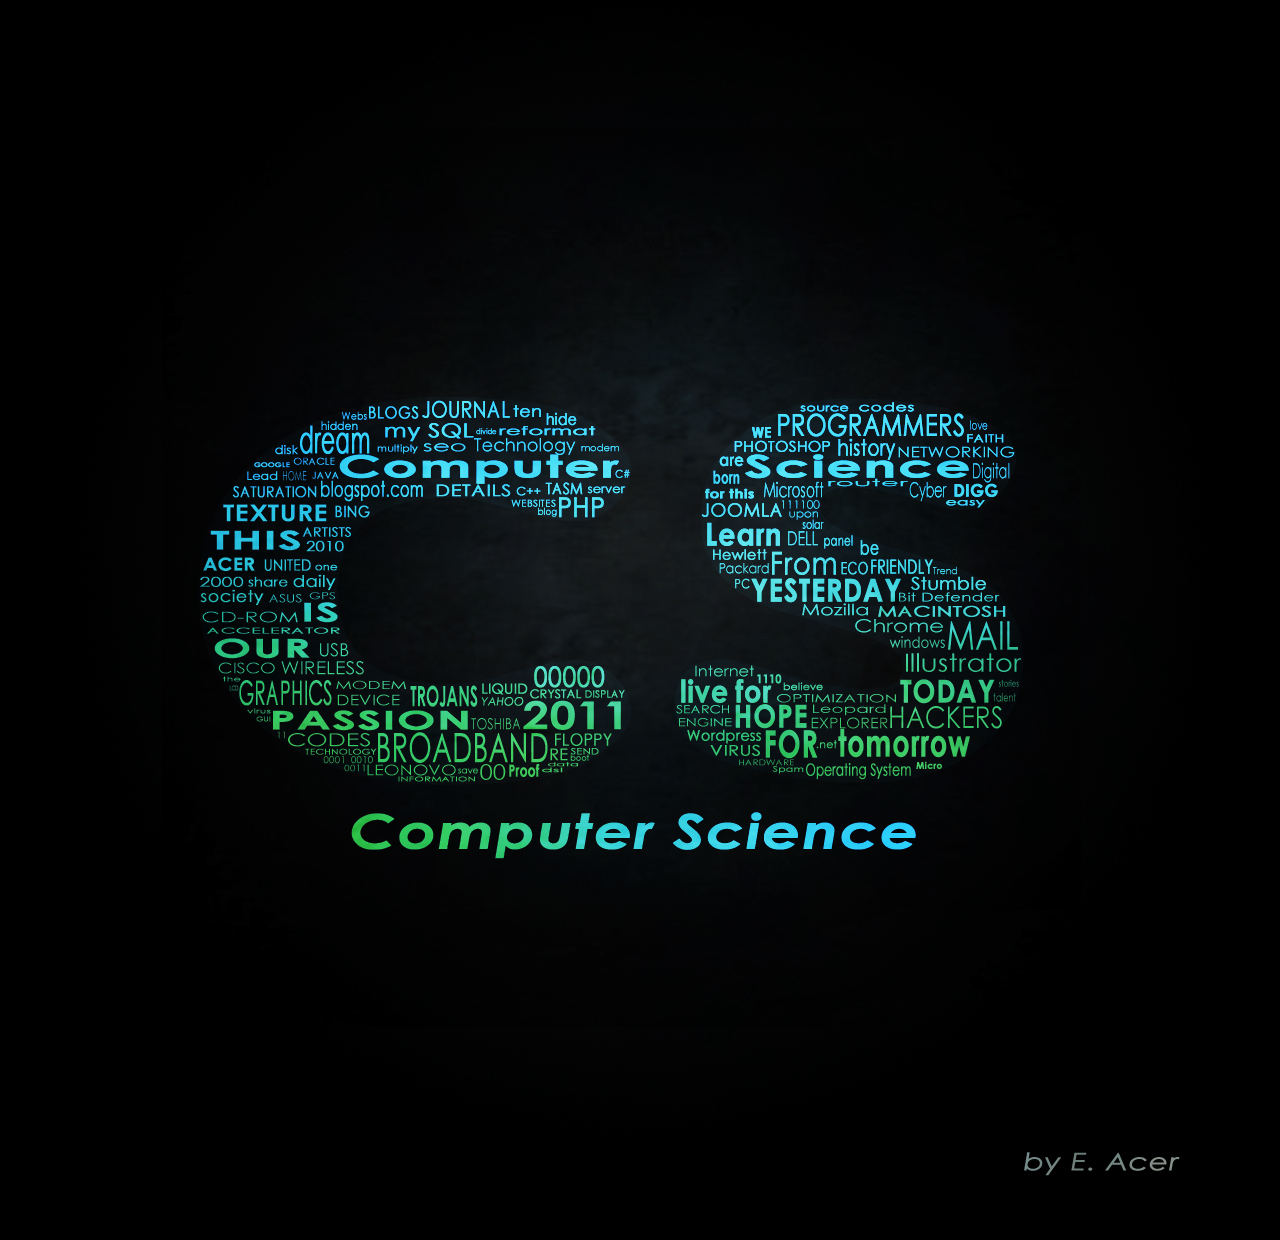 65+] Computer Science Wallpapers - WallpaperSafari